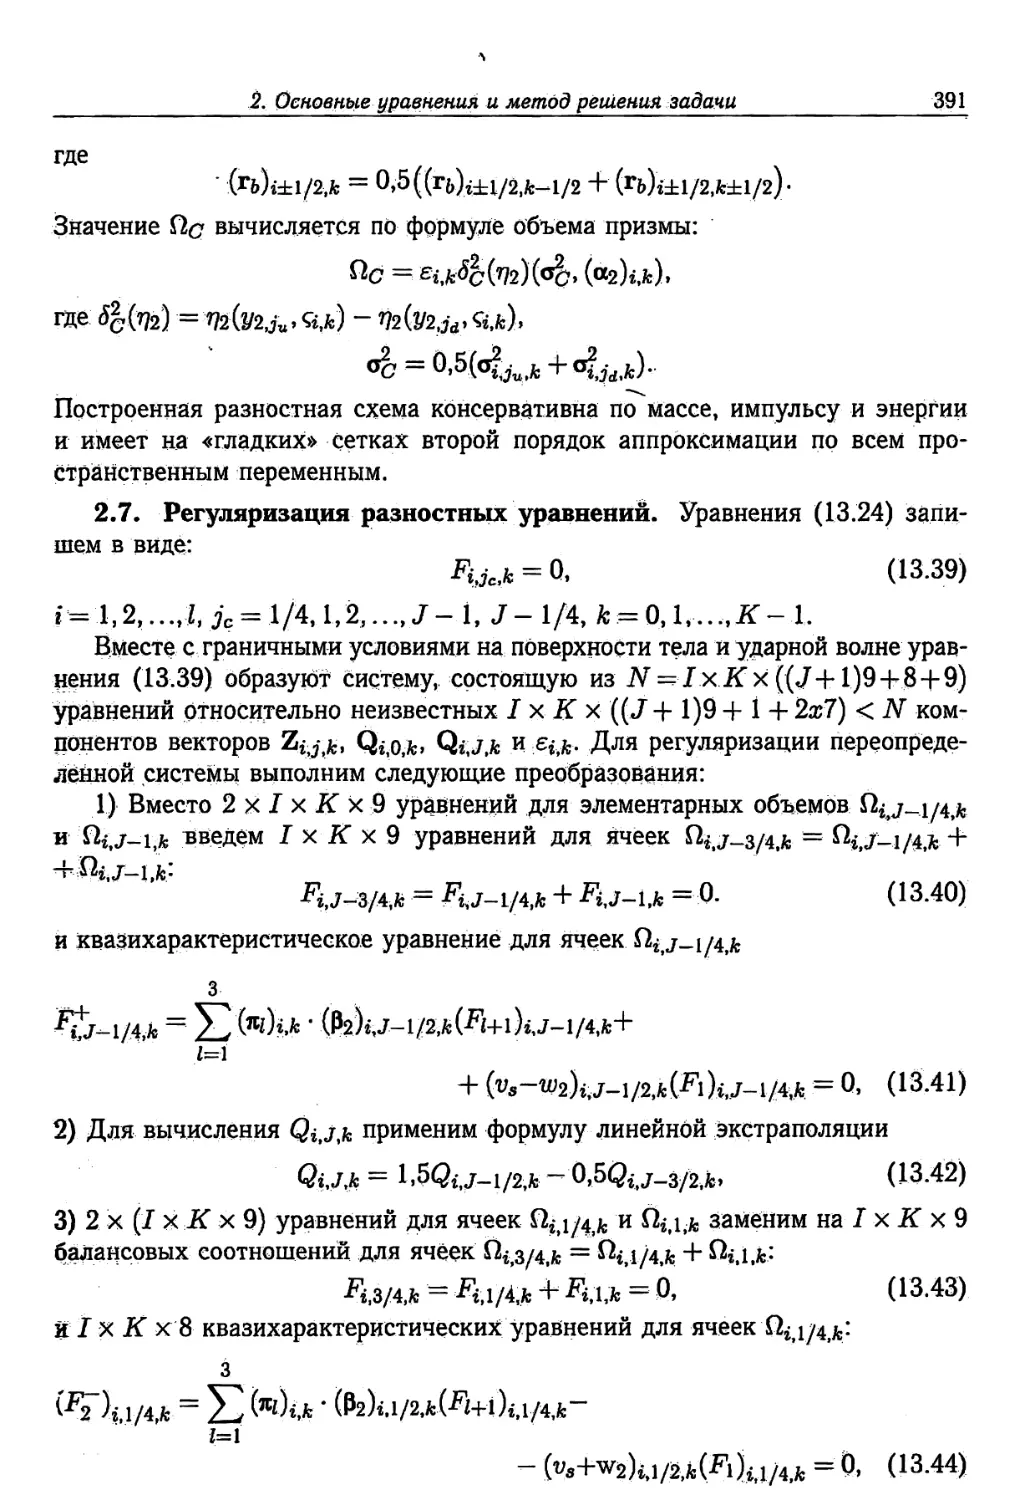 2.7. Регуляризация разностных уравнений